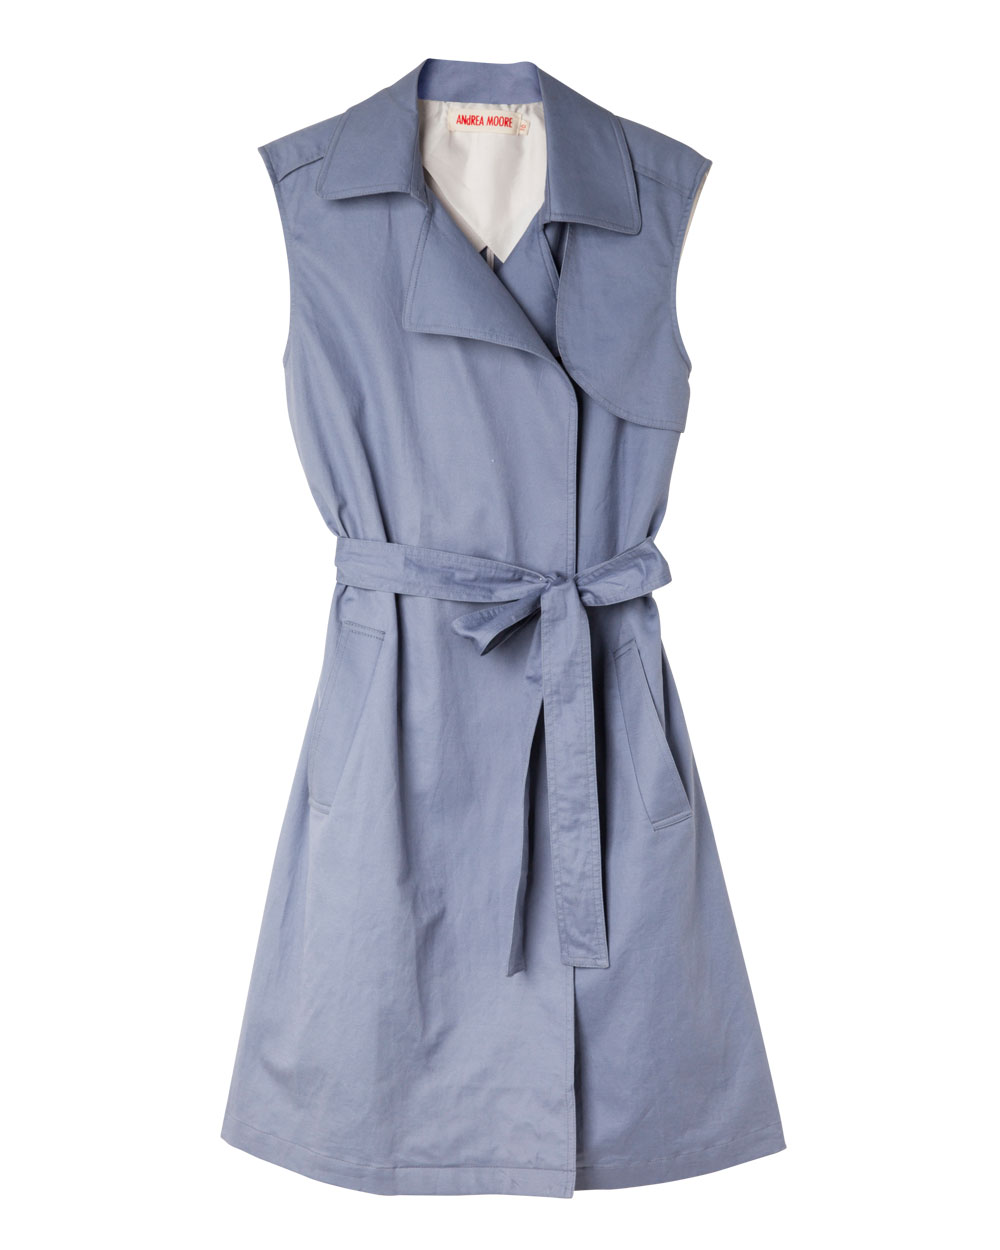 Andrea Moore sleeveless coat, $399